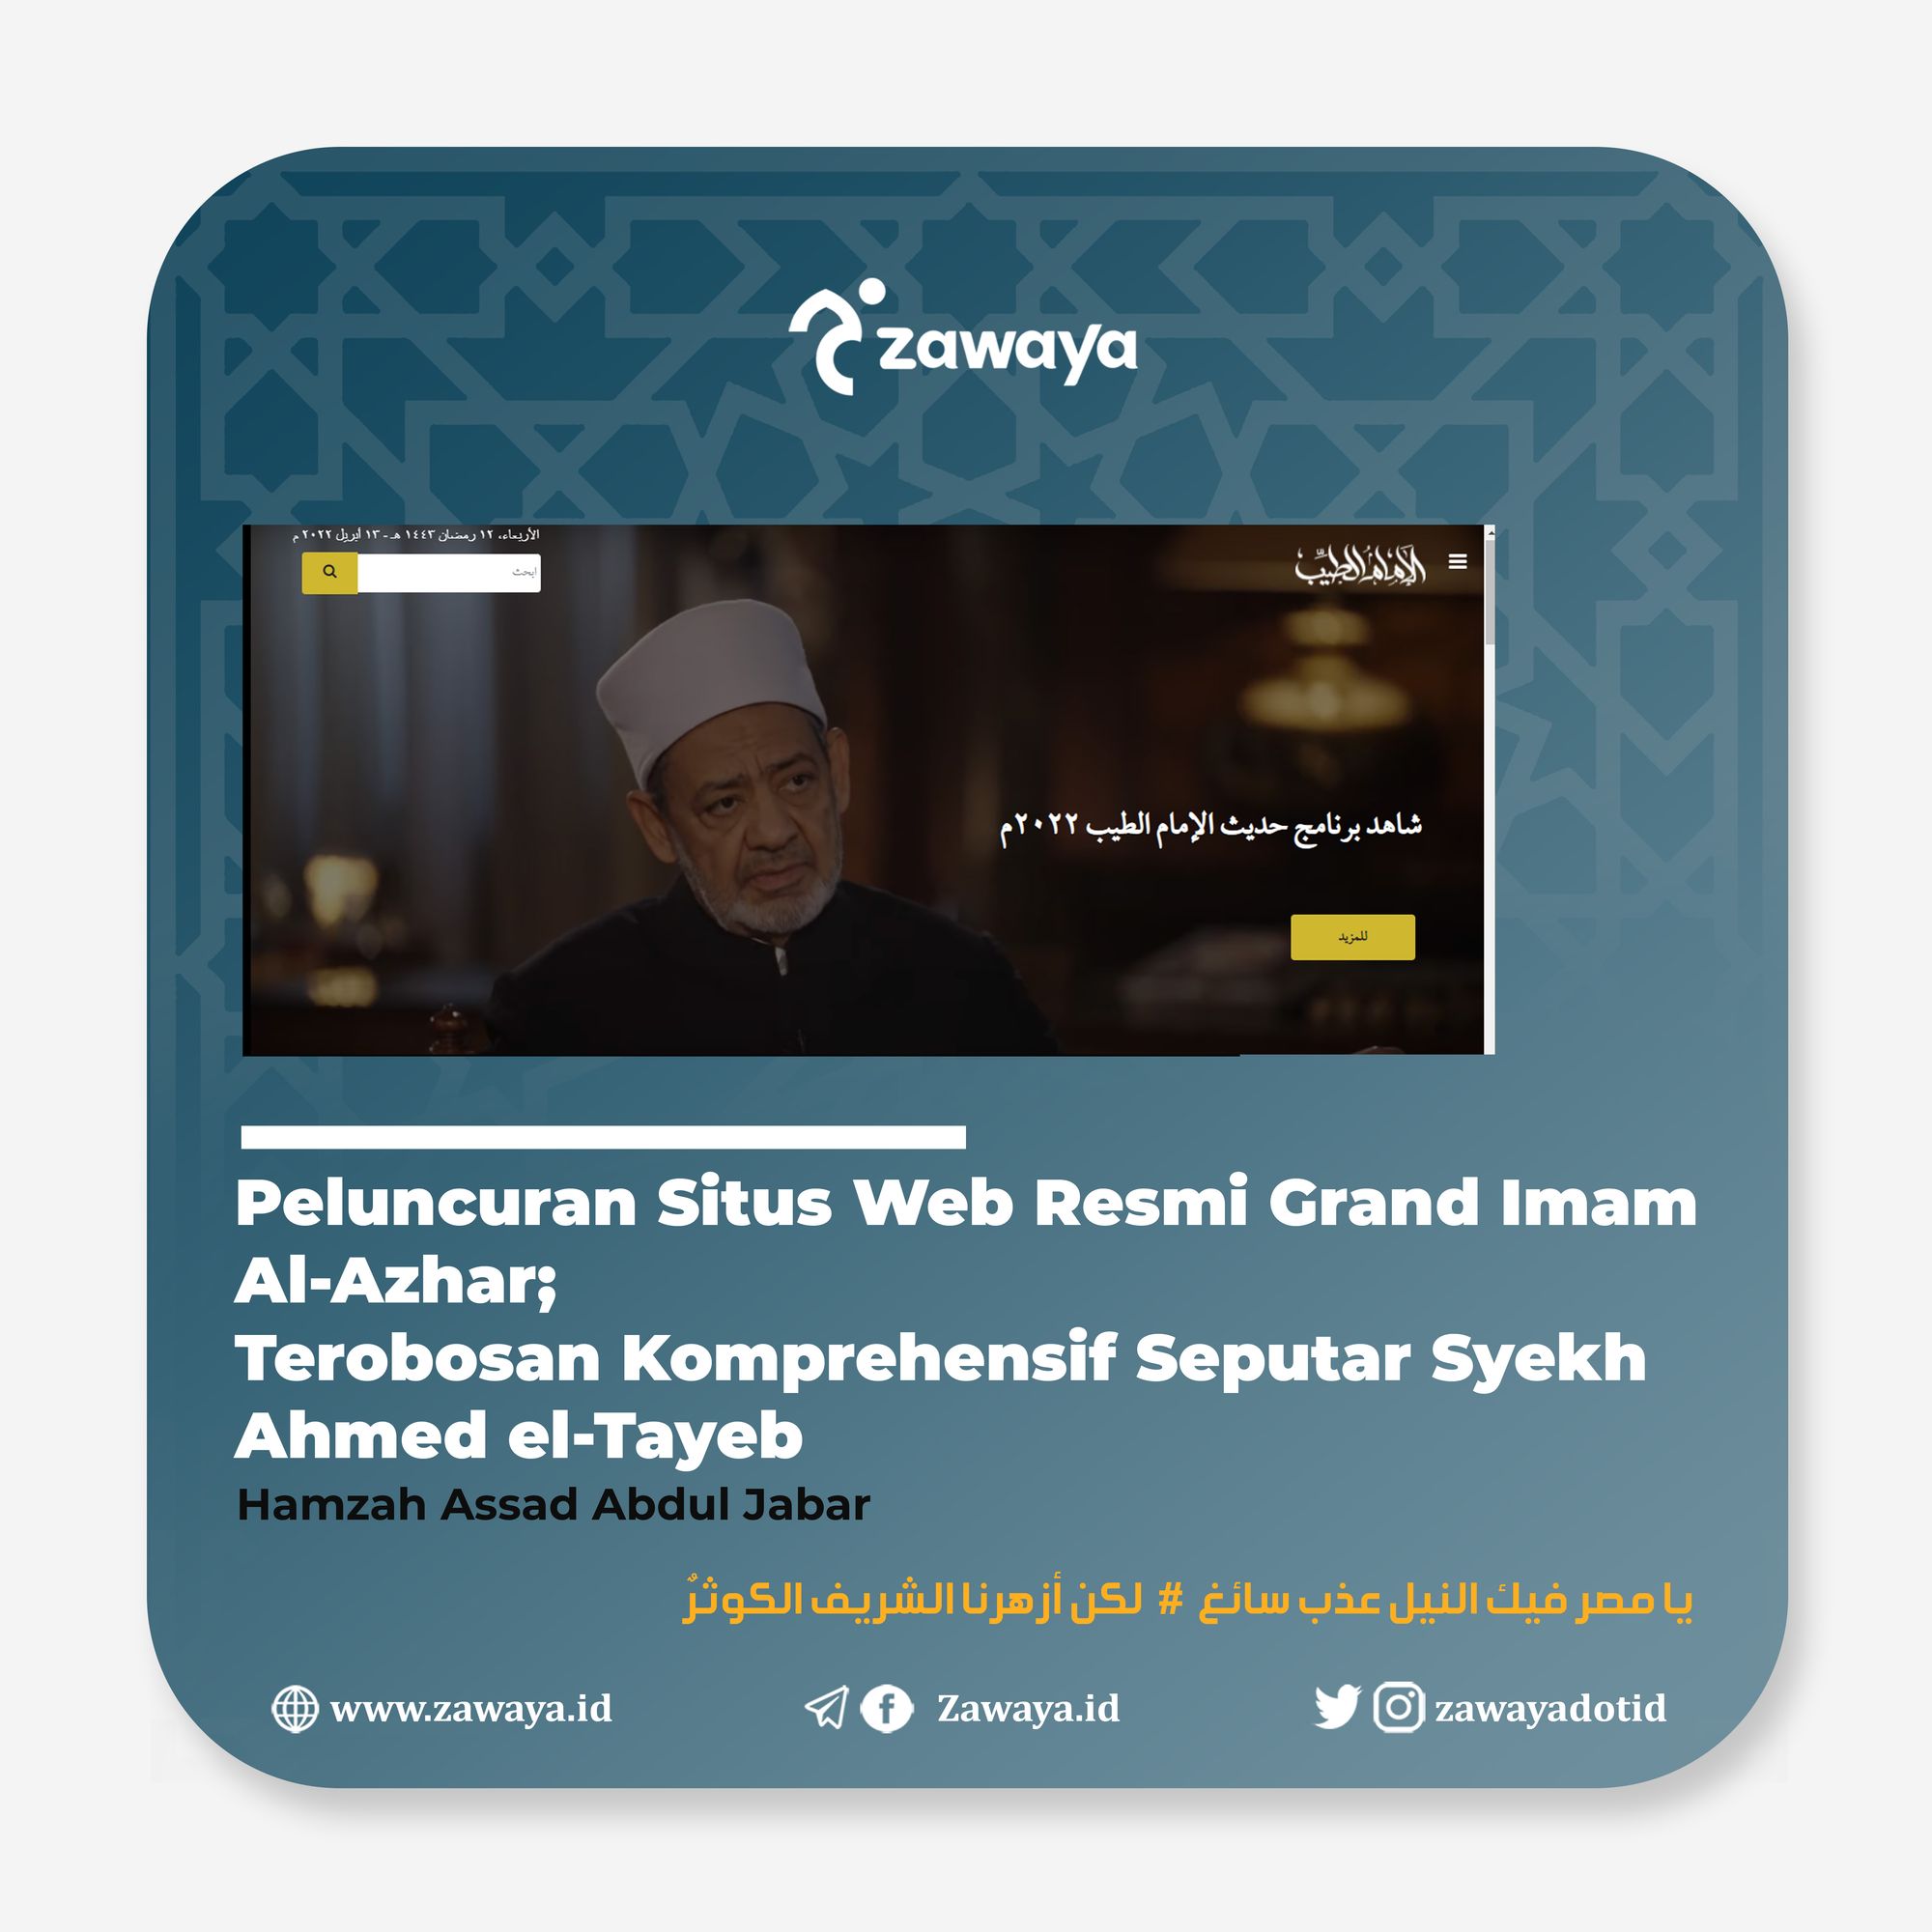 Peluncuran Situs Web Resmi Grand Imam Al-Azhar; Terobosan Komprehensif Seputar Syekh Ahmed el-Tayeb